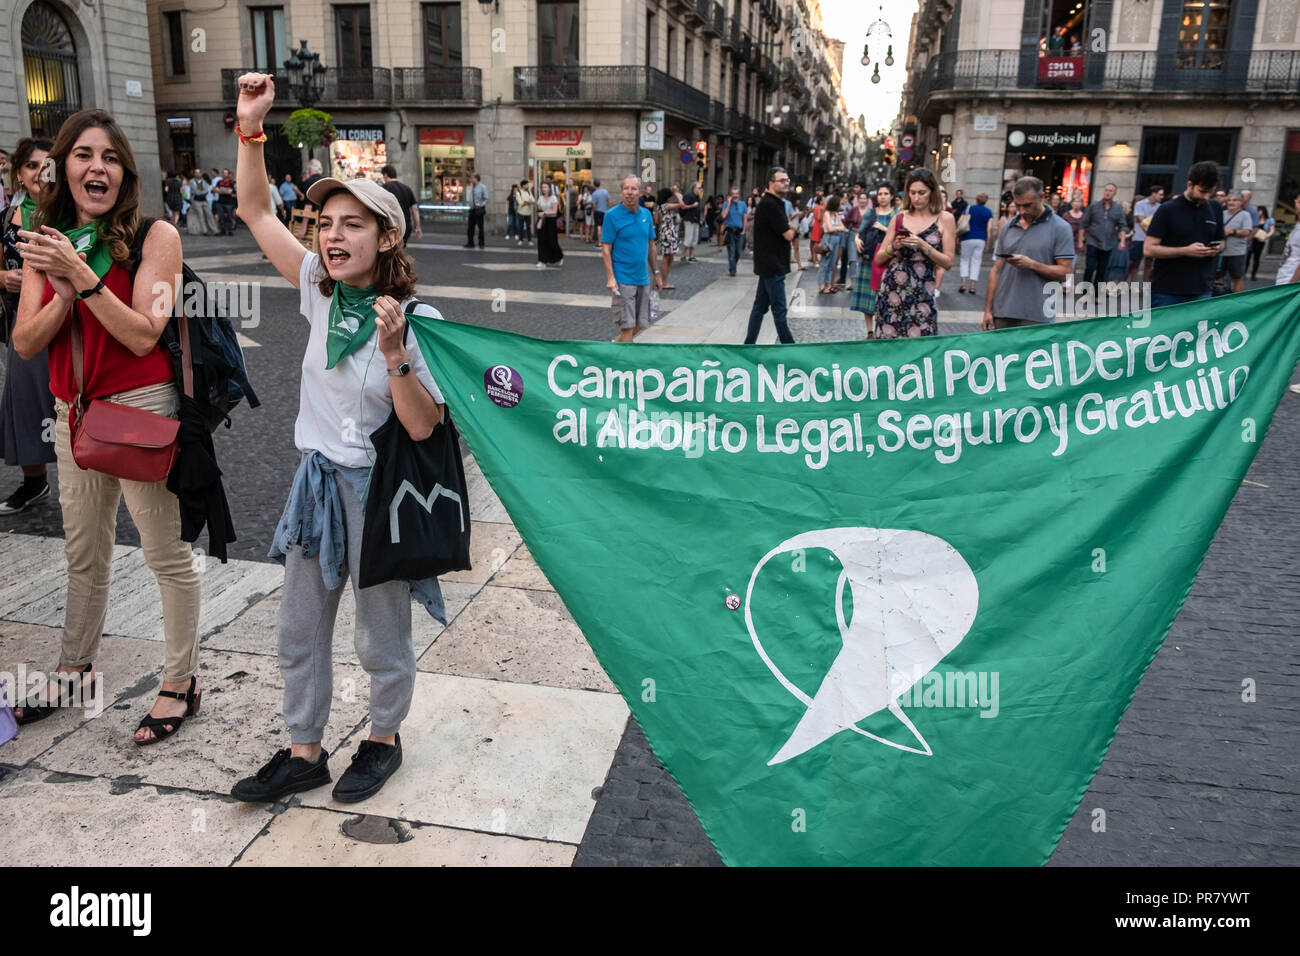 Septiembre 28, 2018 - Barcelona, Cataluña, España - una mujer es visto levantando su puño con una pancarta reivindicando un marco legal, el aborto libre y seguro durante la protesta.coincidiendo con la celebración del Día de Acción Global para un aborto legal y seguro, más de un centenar de mujeres han reclamado su derecho a una libre en Barcelona, el aborto legal y seguro. (Crédito de la Imagen: © Paco Freire/sopa de imágenes a través de Zuma Wire) Foto de stock